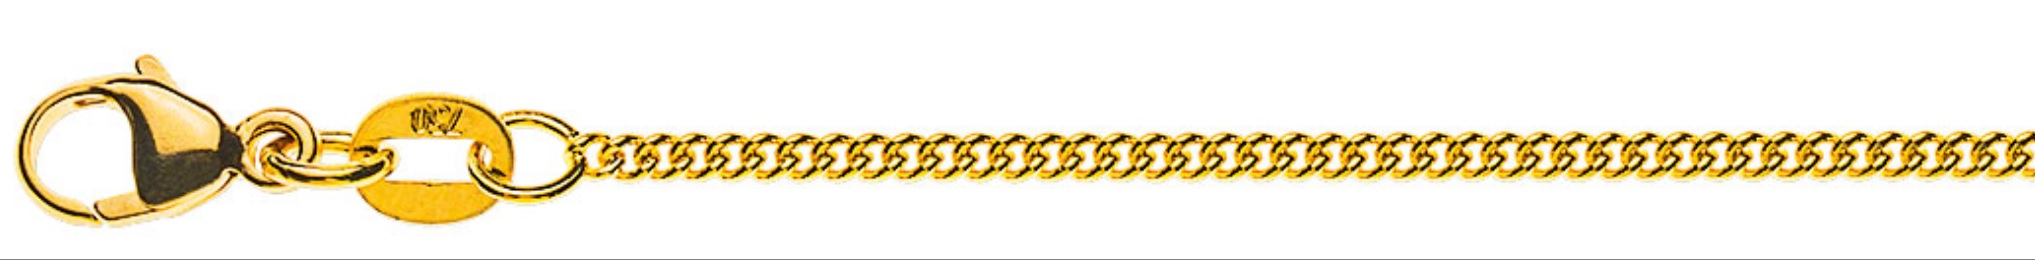 AURONOS Prestige Halskette Gelbgold 18K Rundpanzerkette 55cm 1.6mm